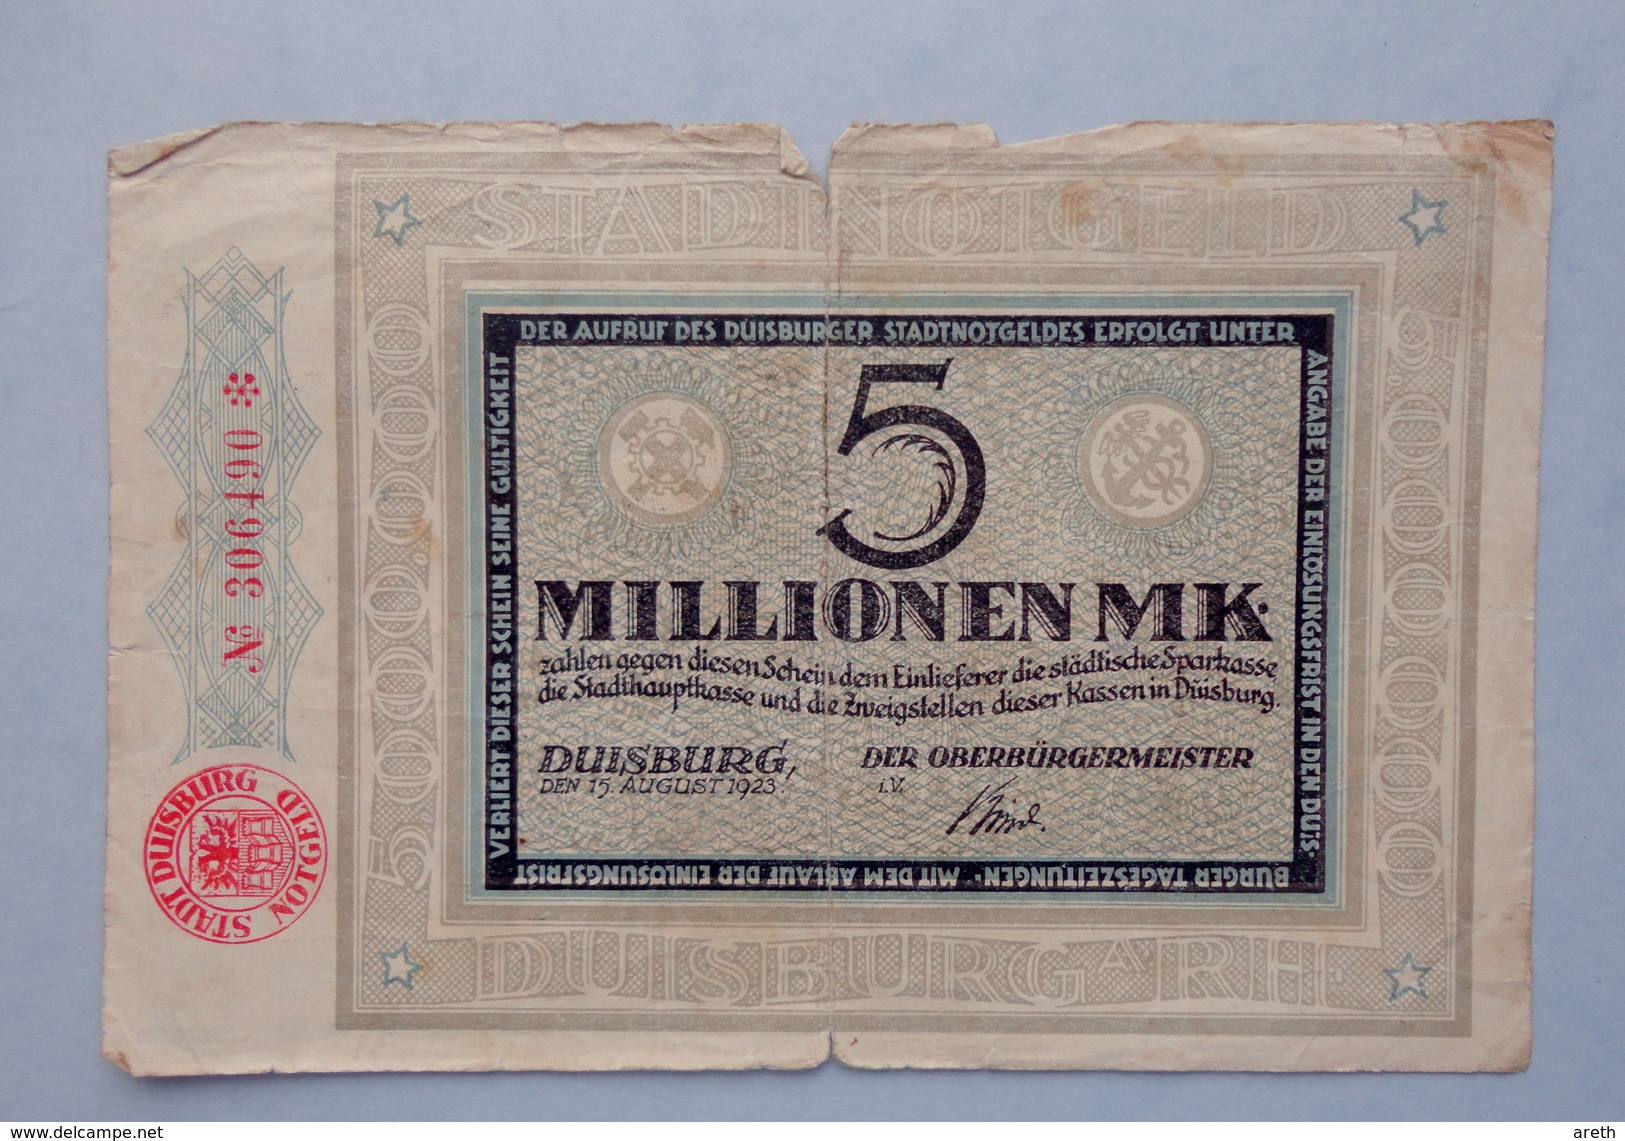 Allemagne -  5 Millionen  Mark DUISBURG 1923 -  Billet De La Période D'inflation - 5 Millionen Mark